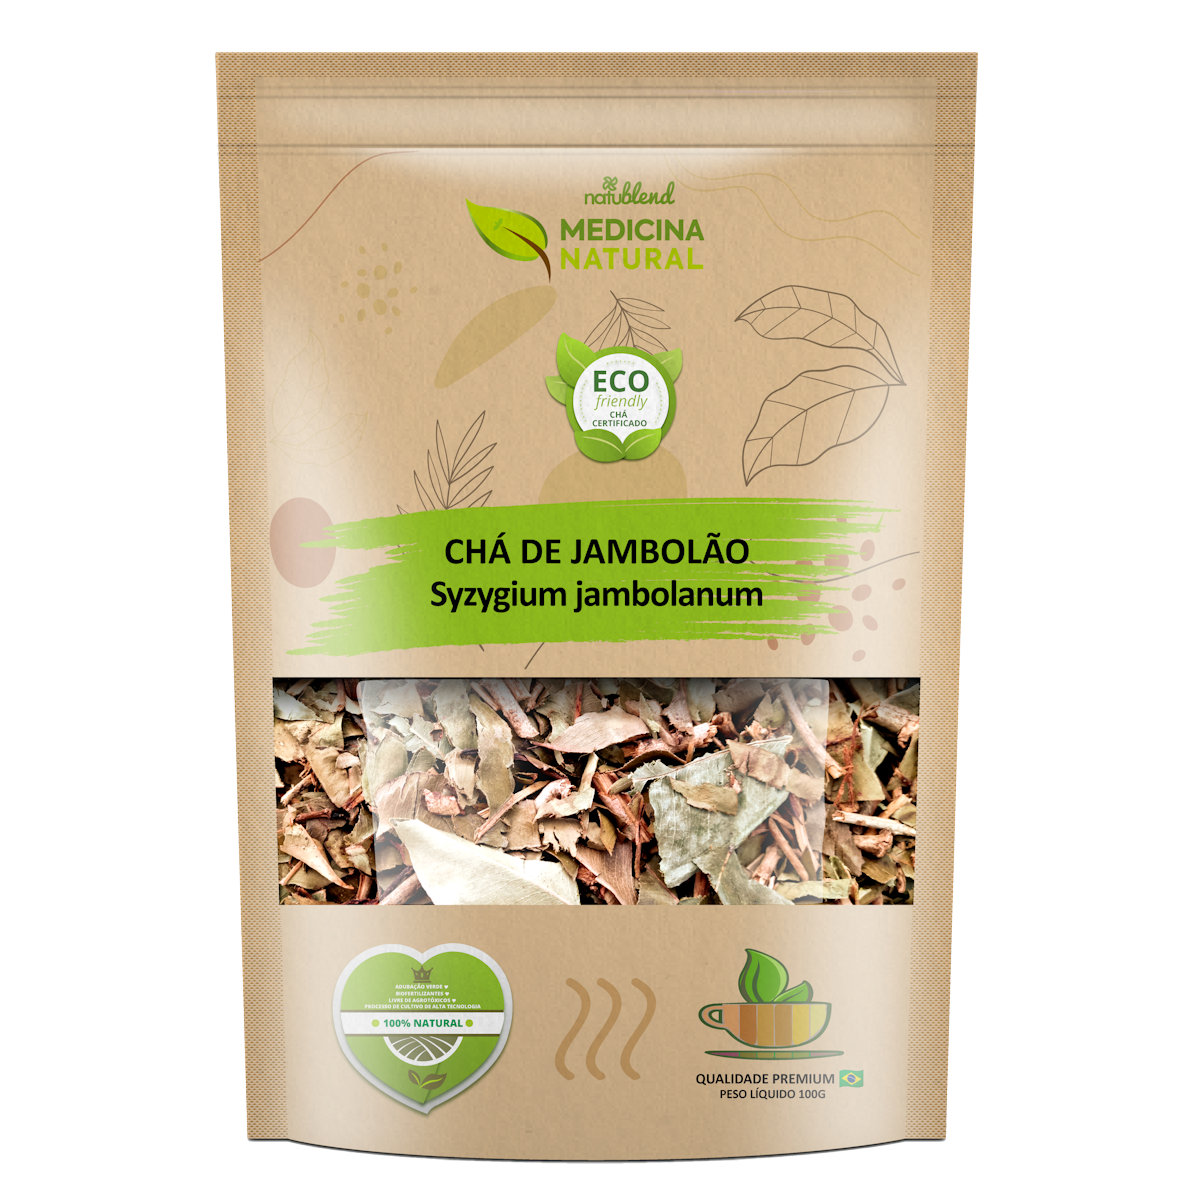 Chá de Jambolão - Syzygium jambolanum -Medicina Natural